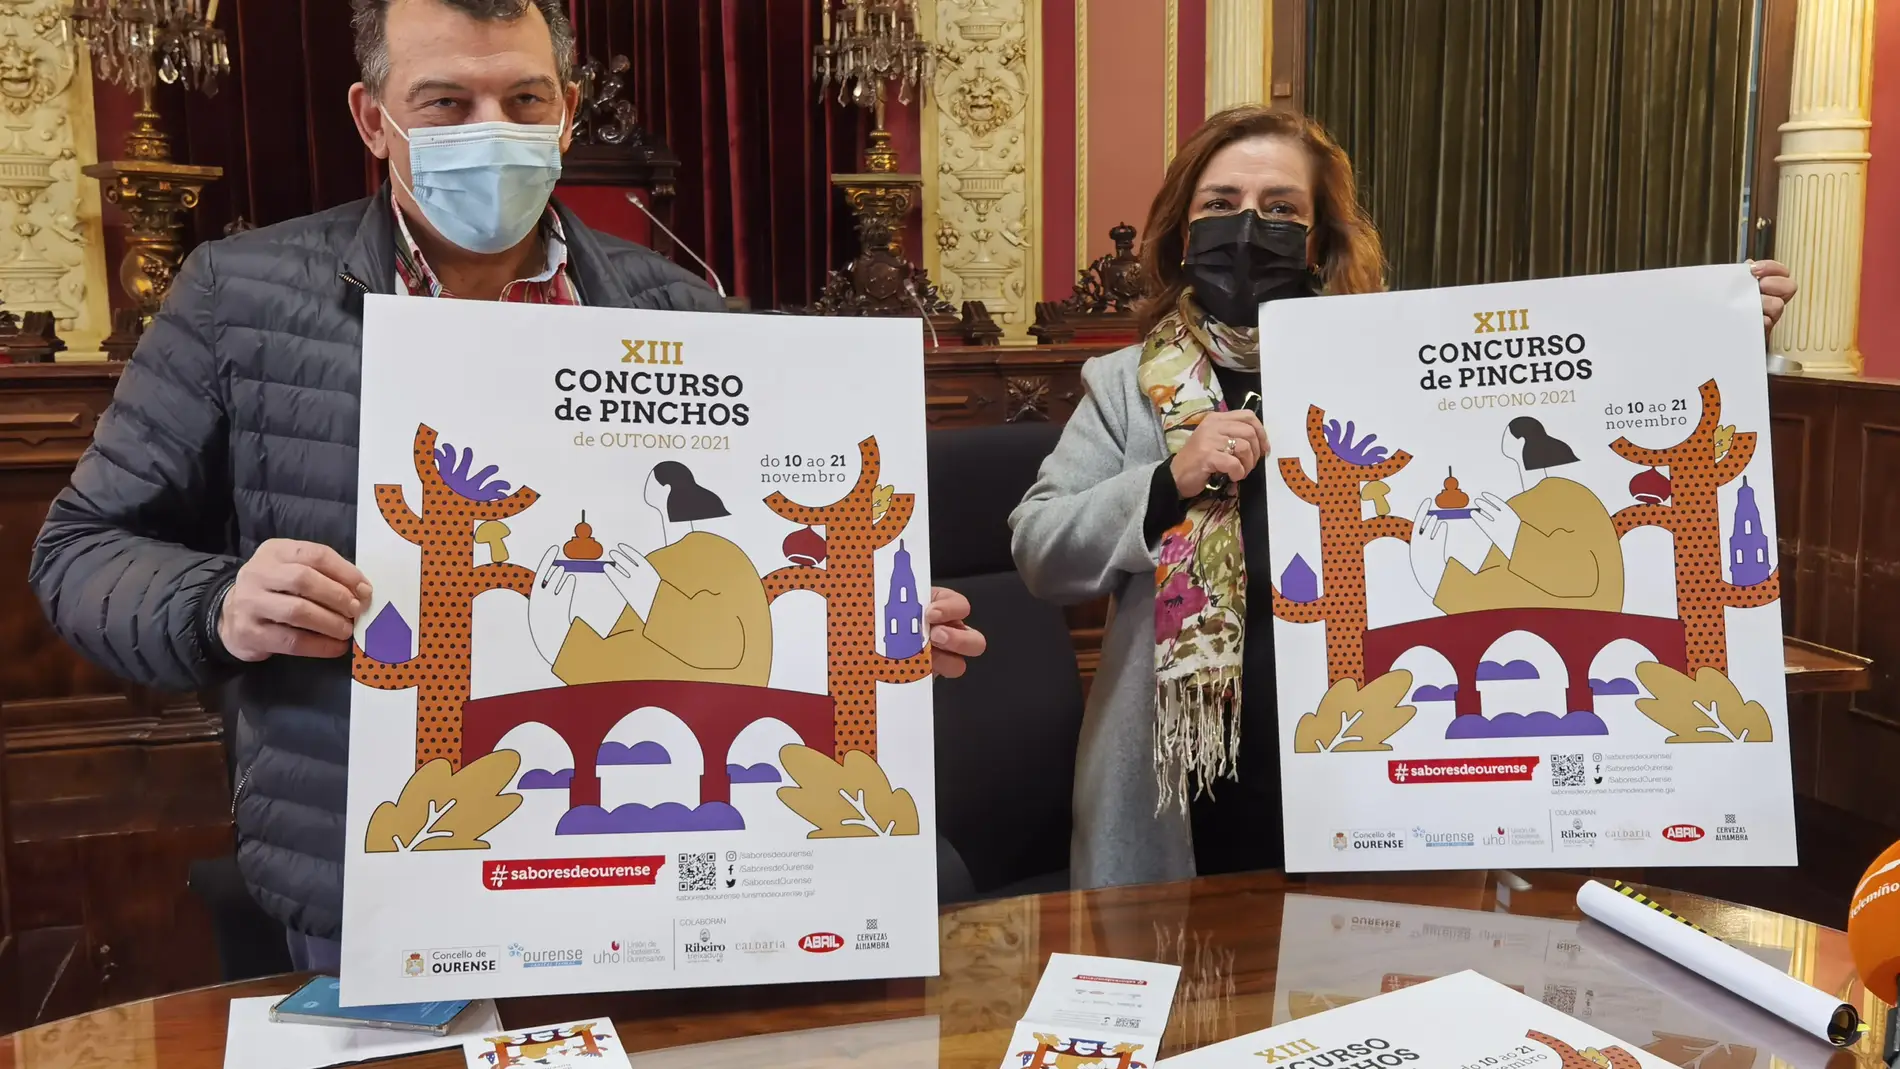 Nova edición do Concurso de Pinchos – Sabores de Ourense do 10 o 21 de Novembro